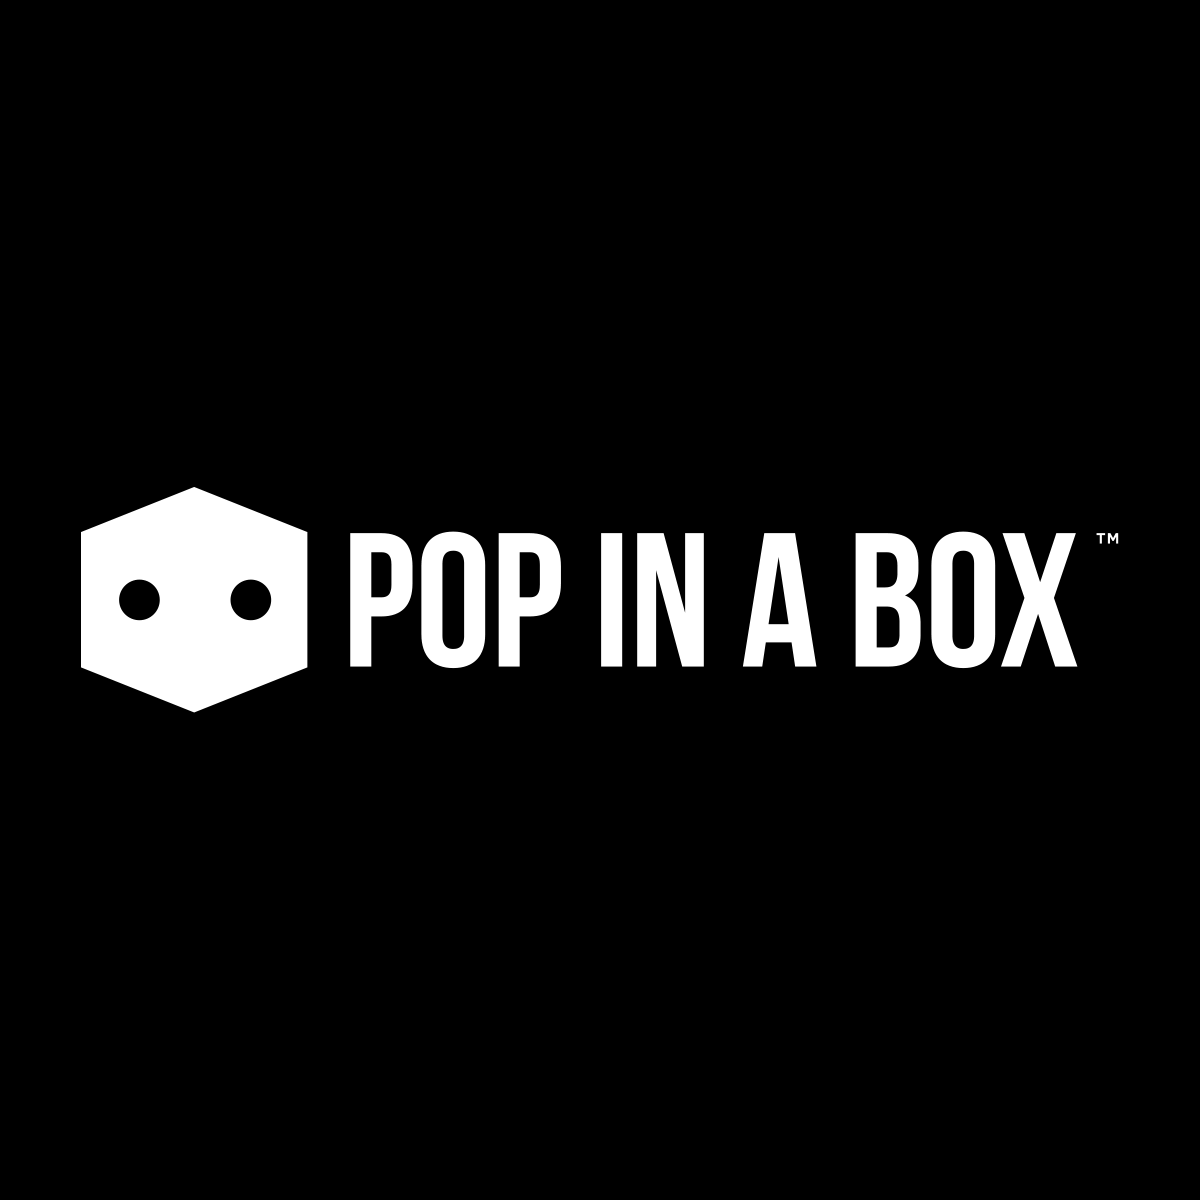 www.popinabox.ie